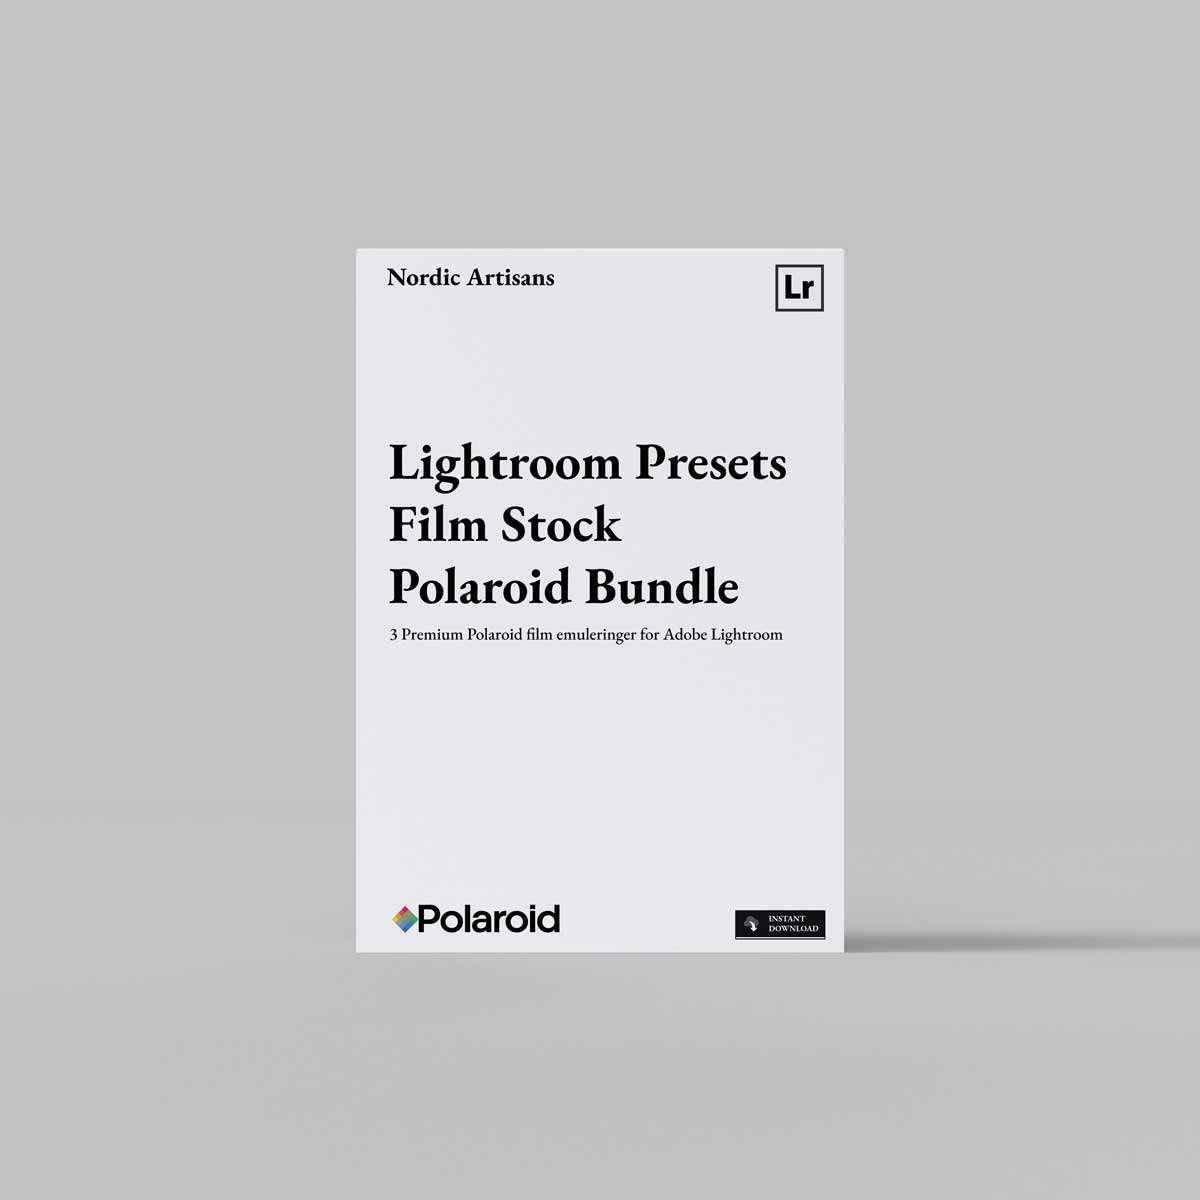 Polaroid Film emulsjon for Adobe Lightroom fra Nordic Artisans